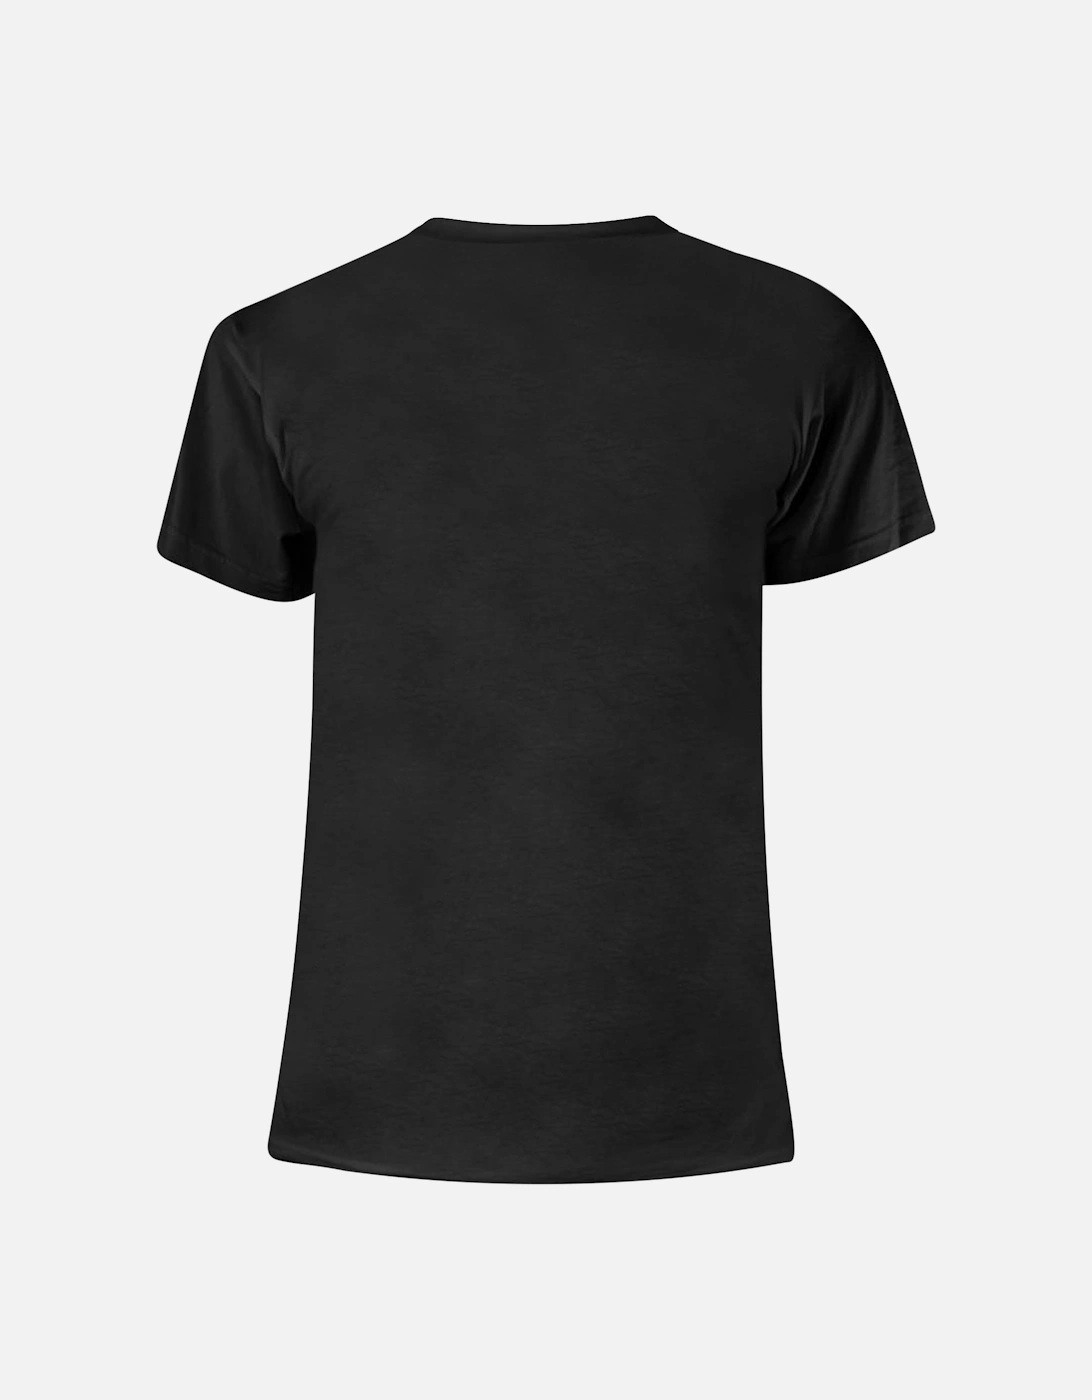 Unisex Adult E Street T-Shirt